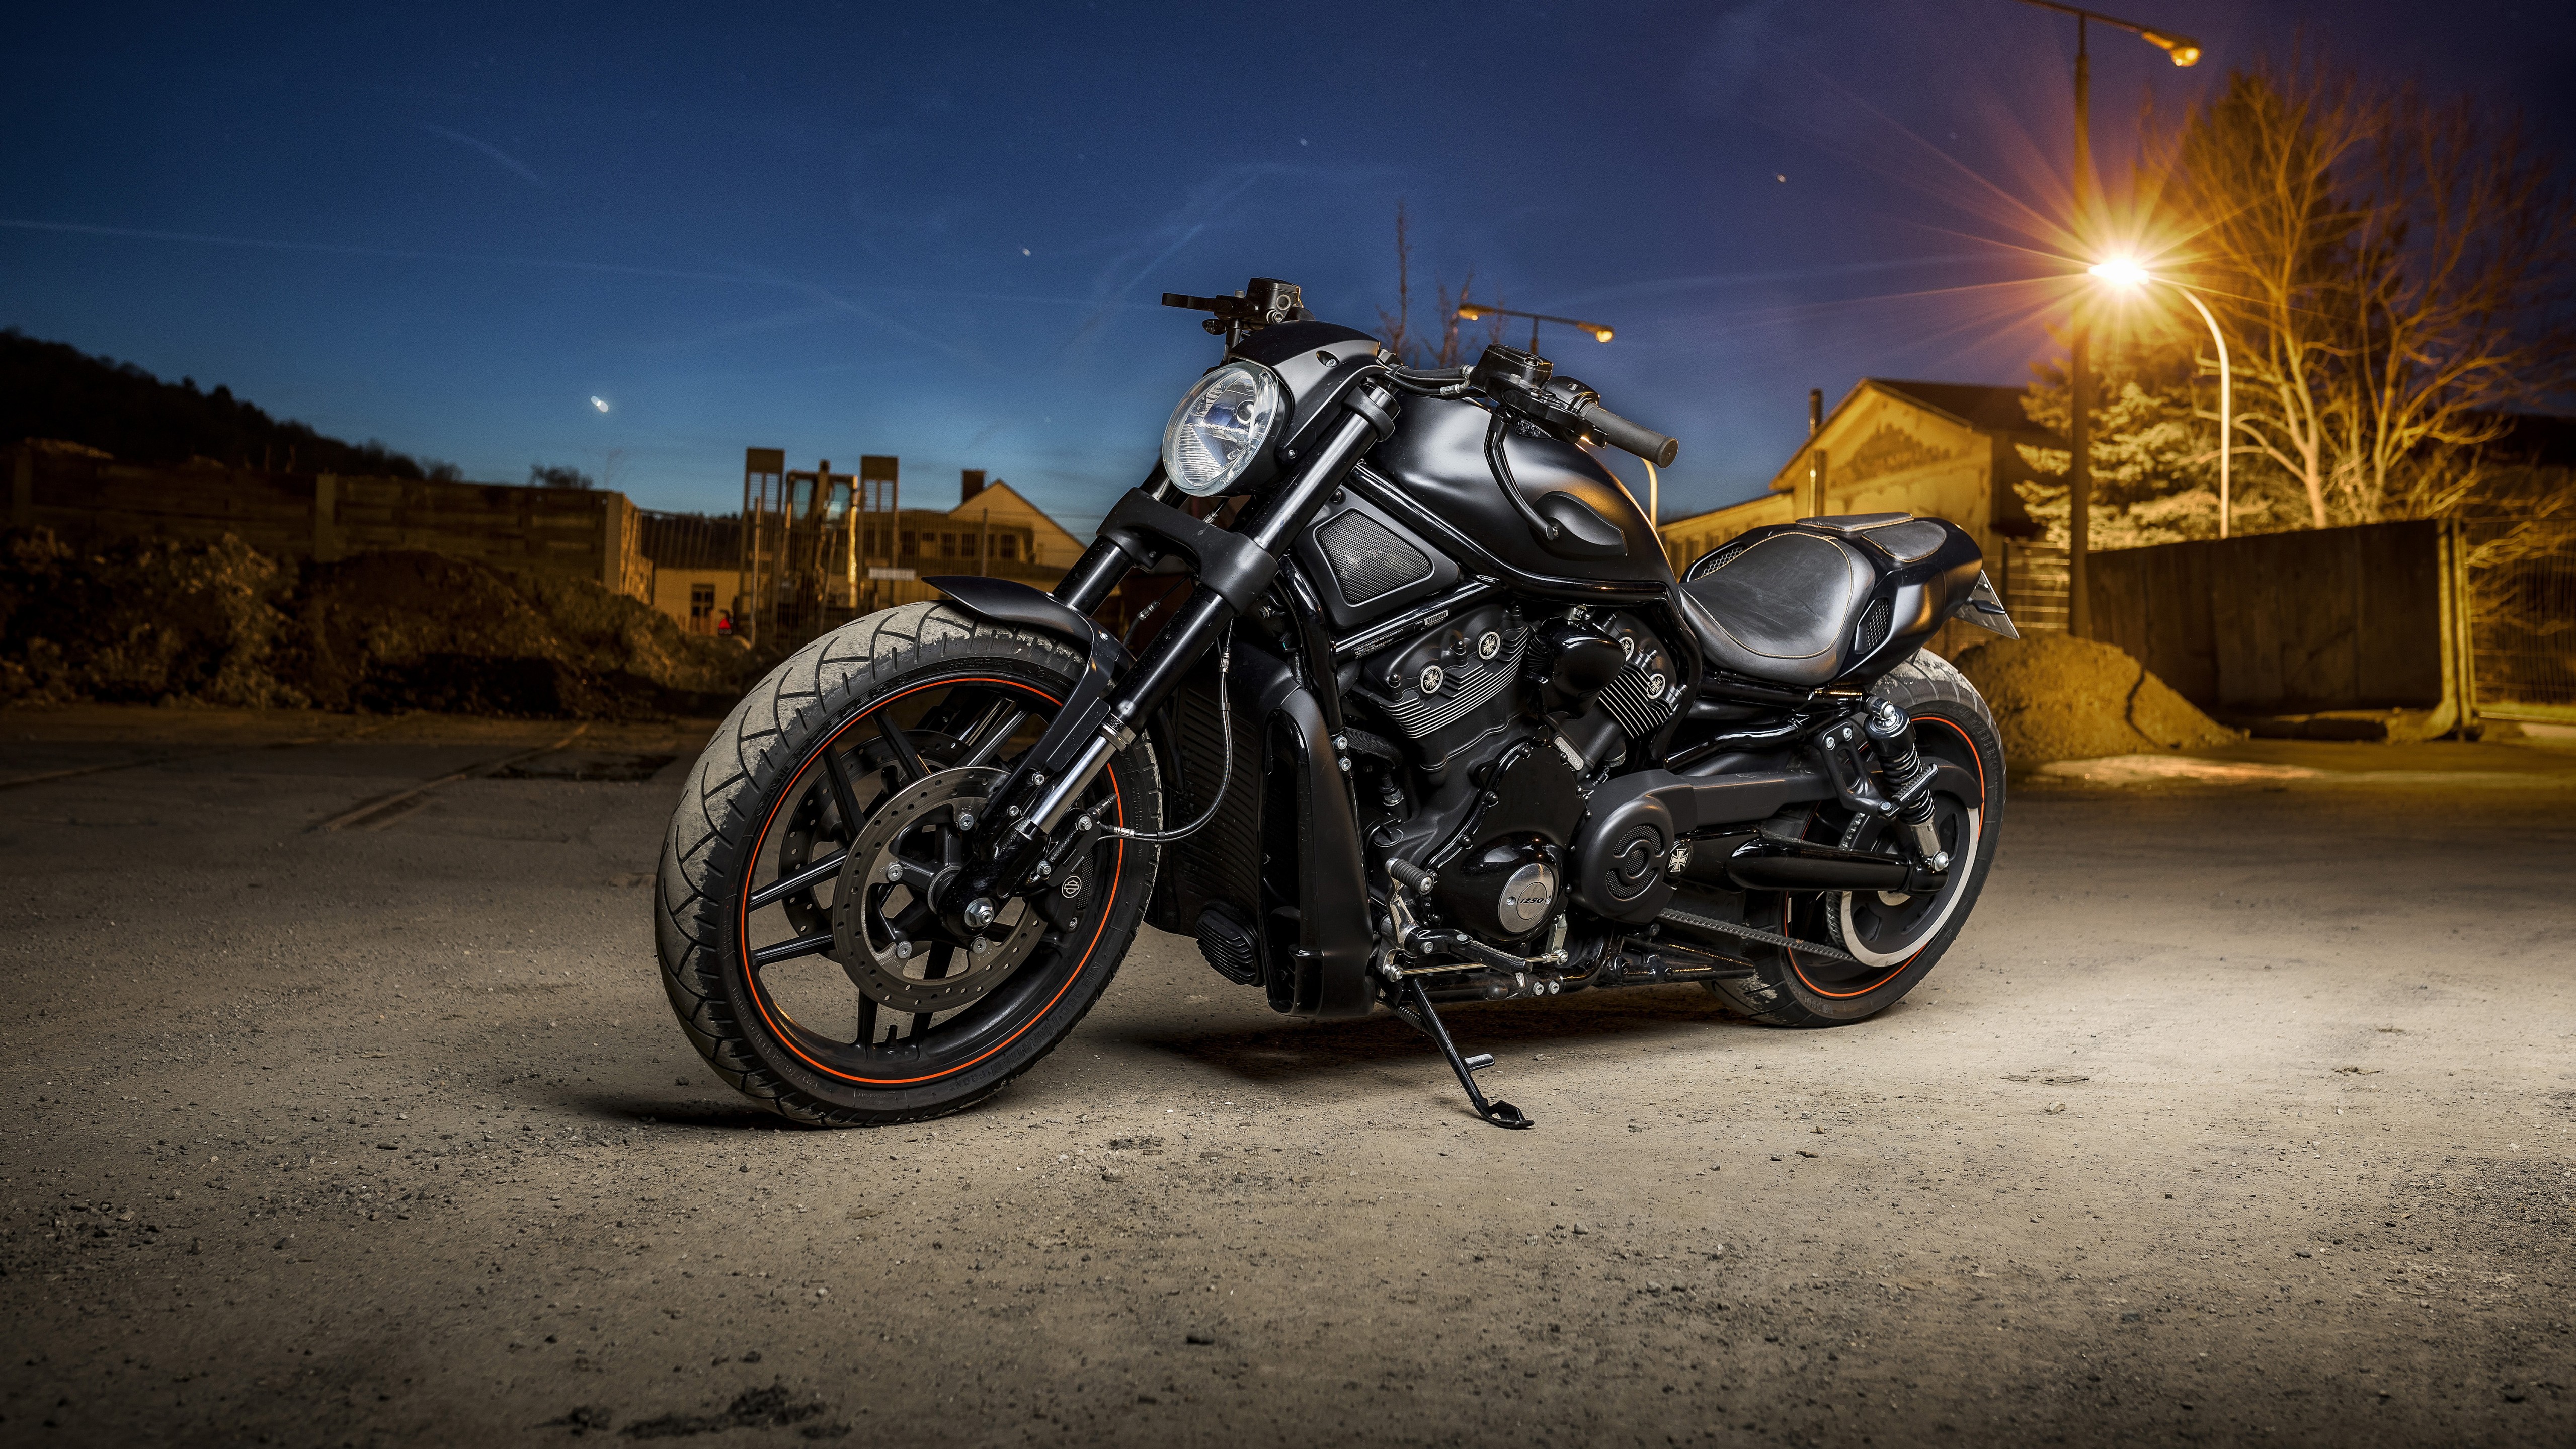 Zastaki.com - Мощный черный мотоцикл Harley Davidson стоит на улице с фонарем